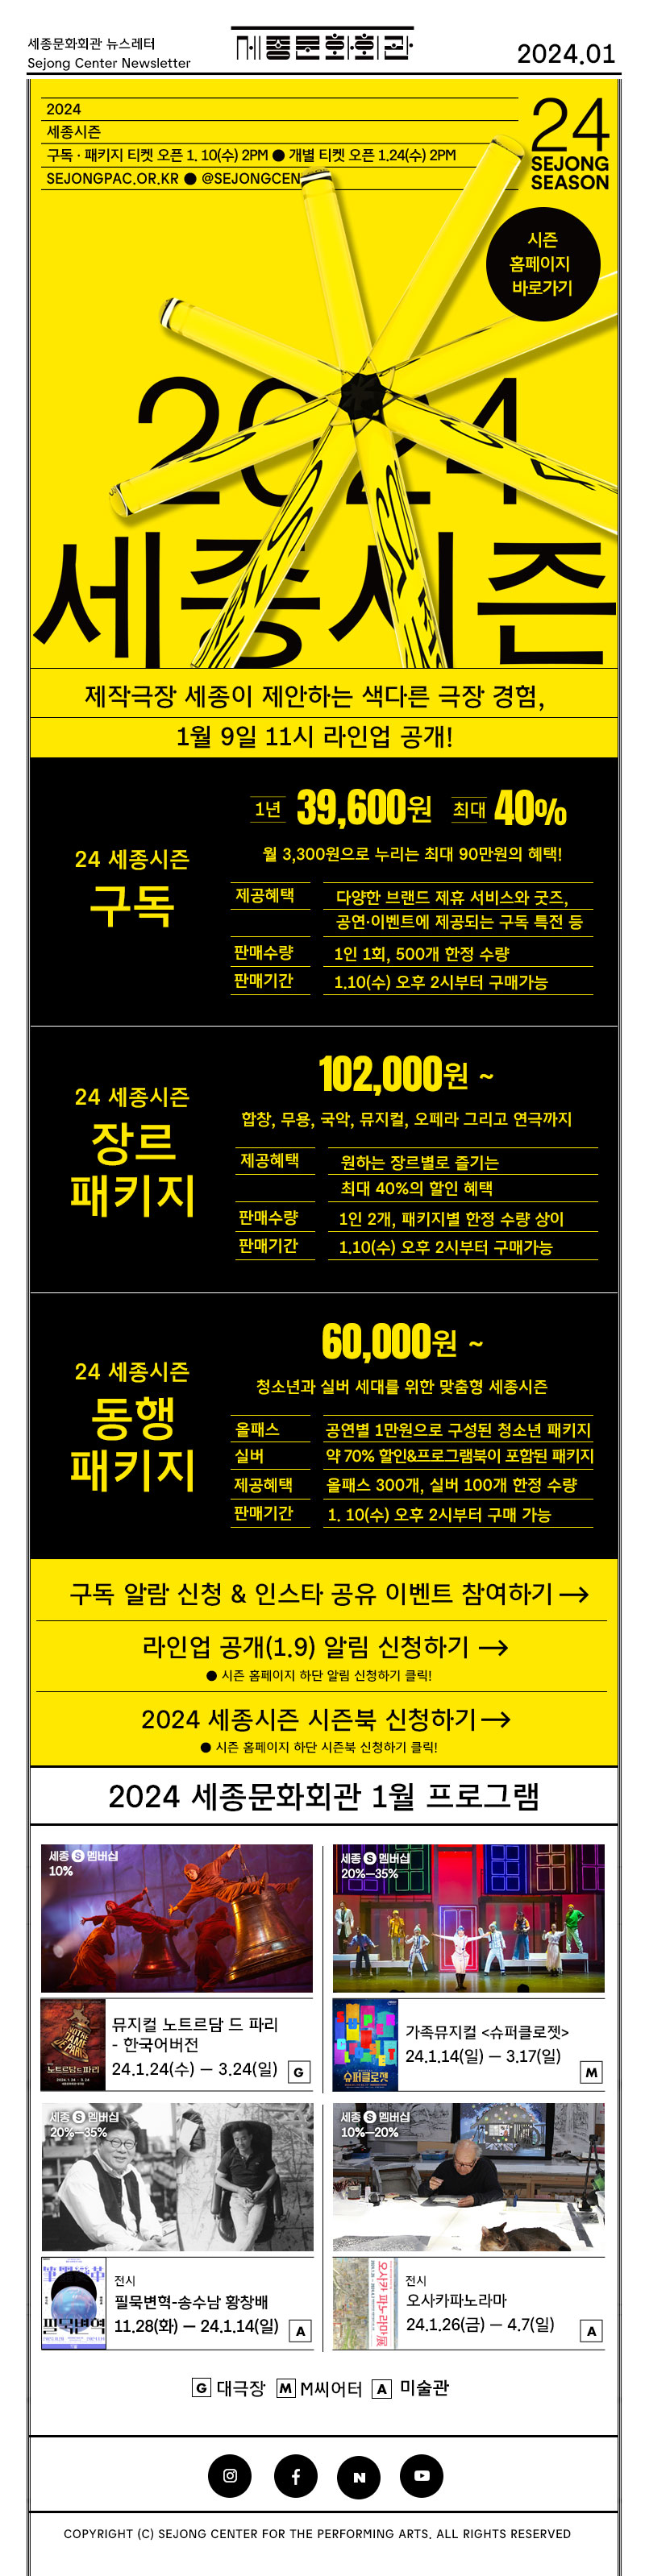 세종문화회관 뉴스레터 sejongcenter newsletter 2024.01 